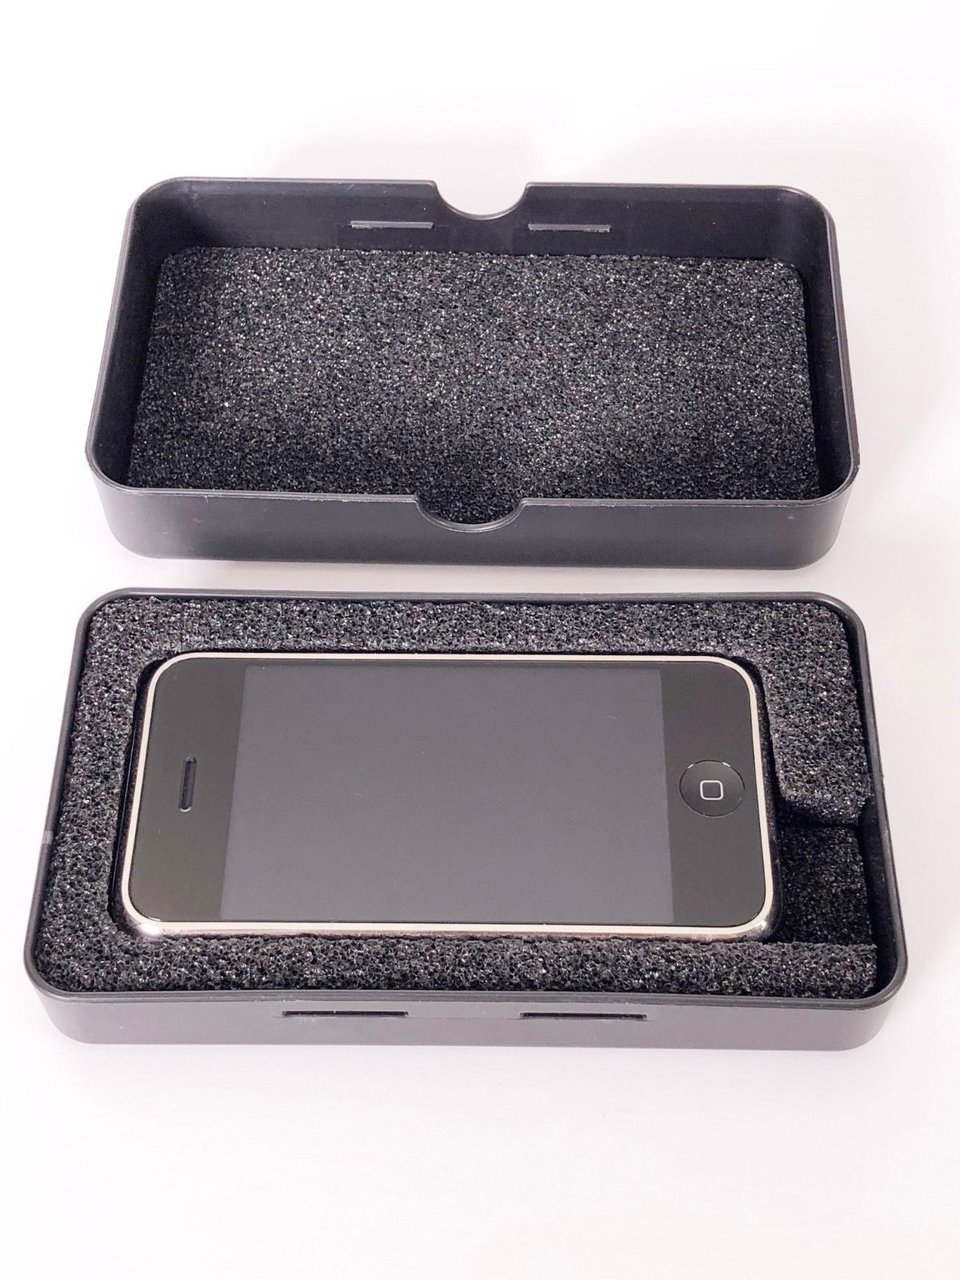 Πωλείται στο eBay σπάνιο πρωτότυπο iPhone και οι προσφορές έχουν ήδη ξεπεράσει τα $13.000 - Φωτογραφία 3